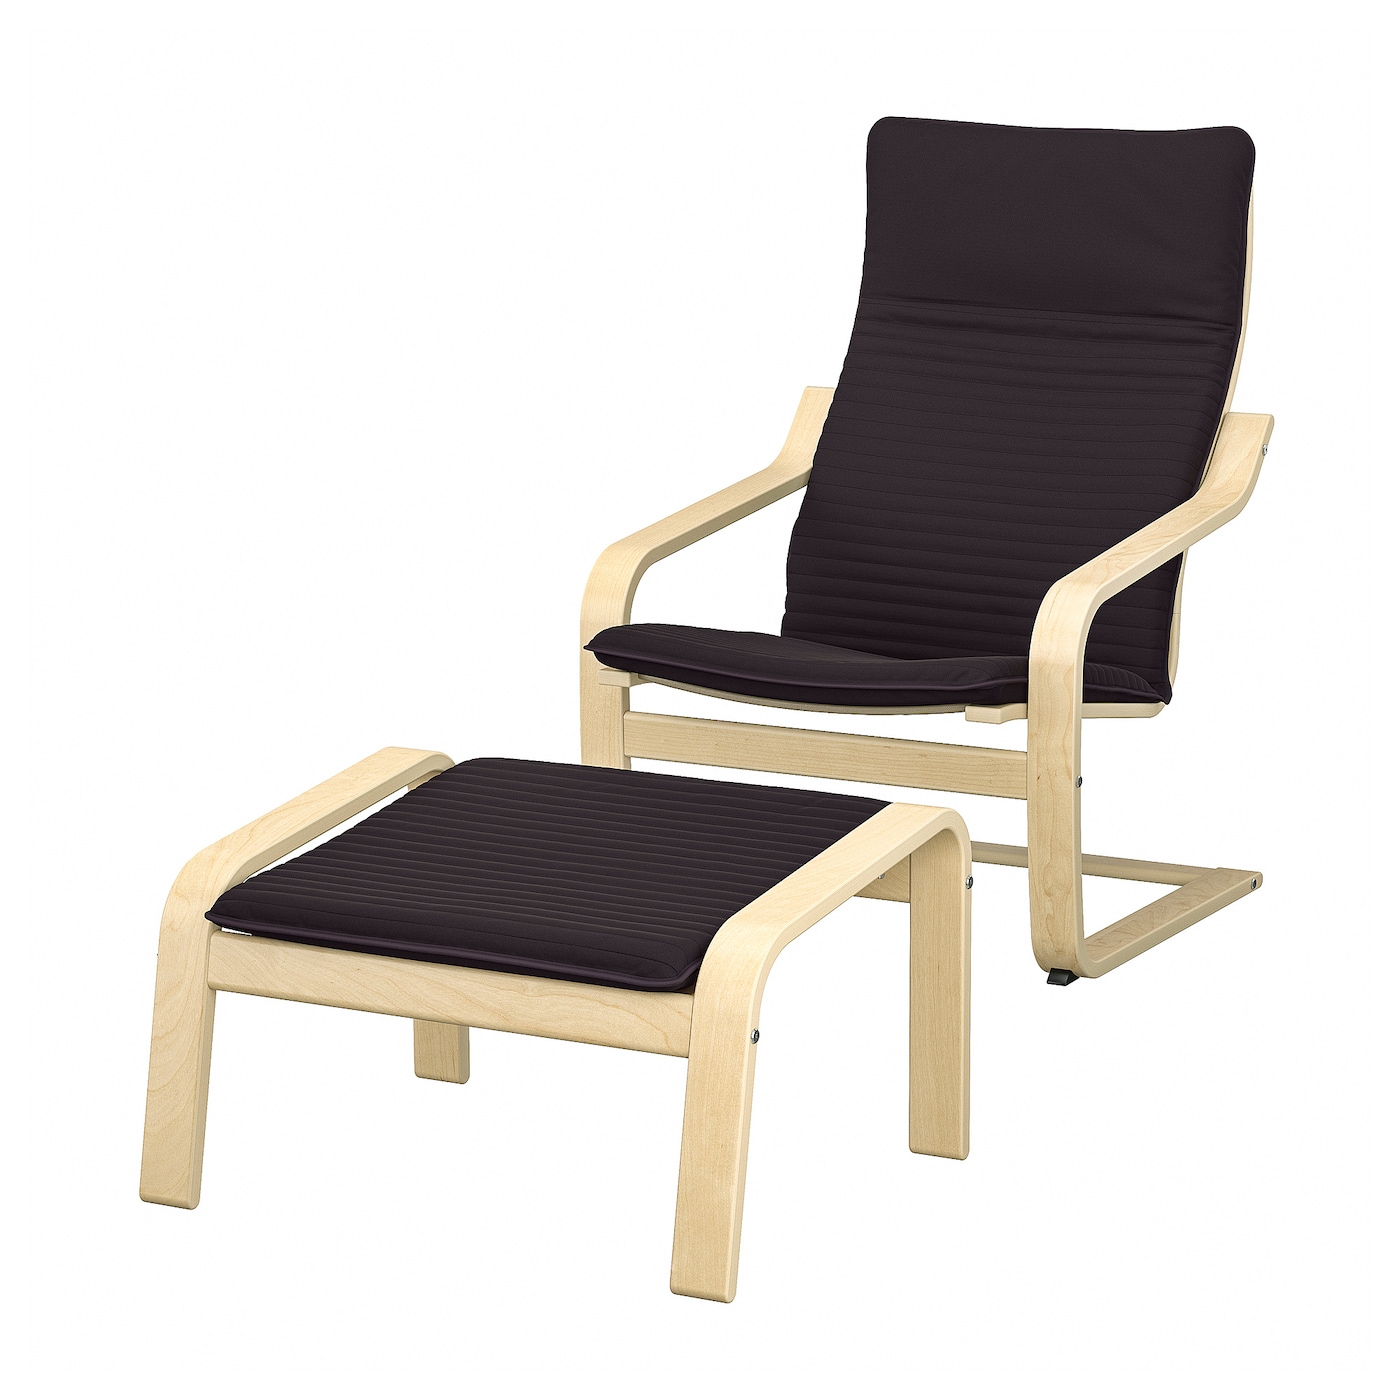 ПОЭНГ Кресло и подставка для ног, березовый шпон/Книса черный POÄNG IKEA